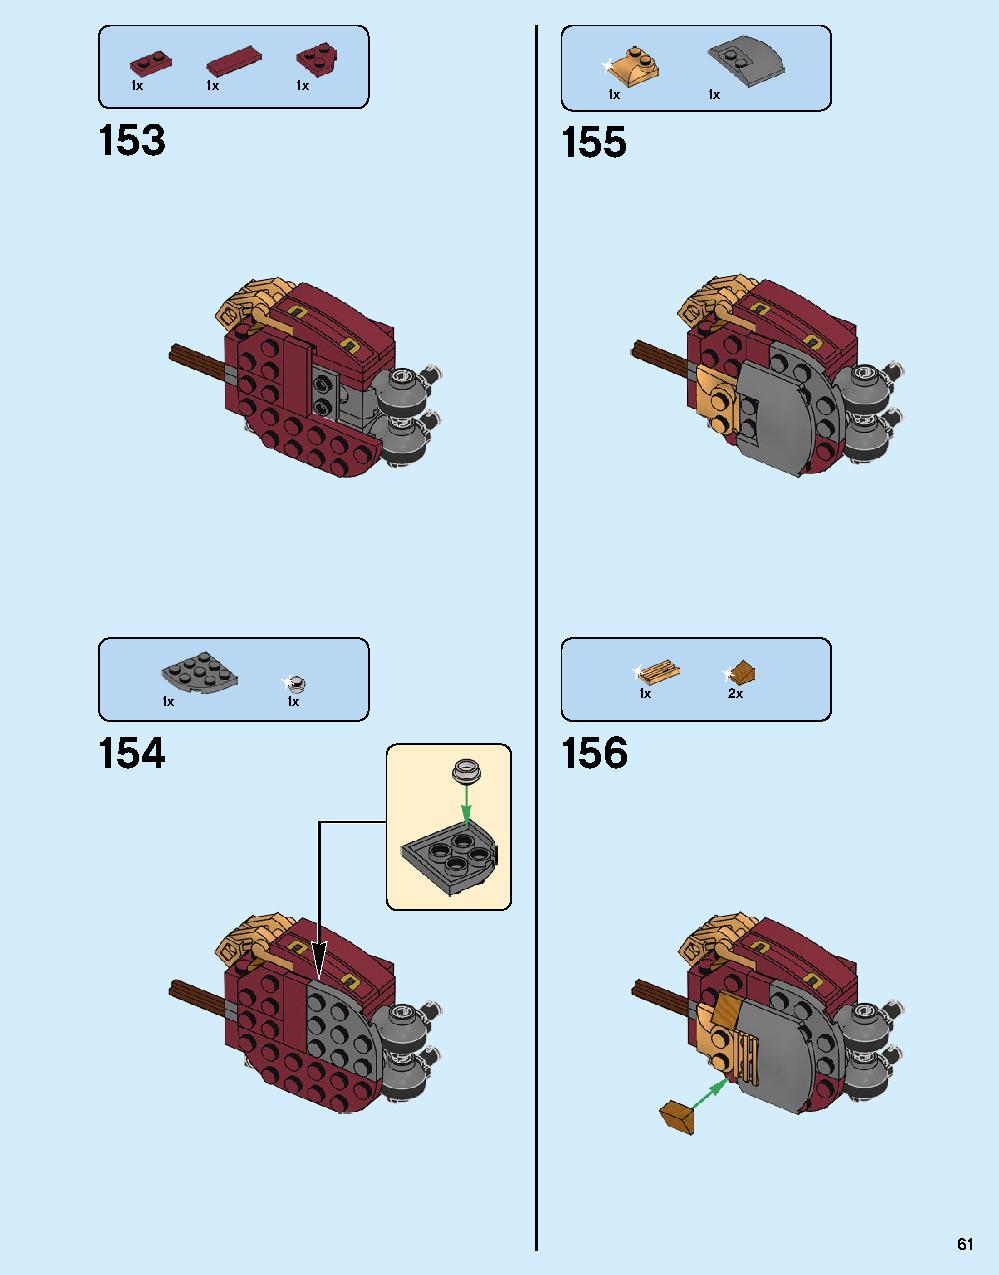 ハルクバスター：ウルトロン・エディション 76105 レゴの商品情報 レゴの説明書・組立方法 61 page